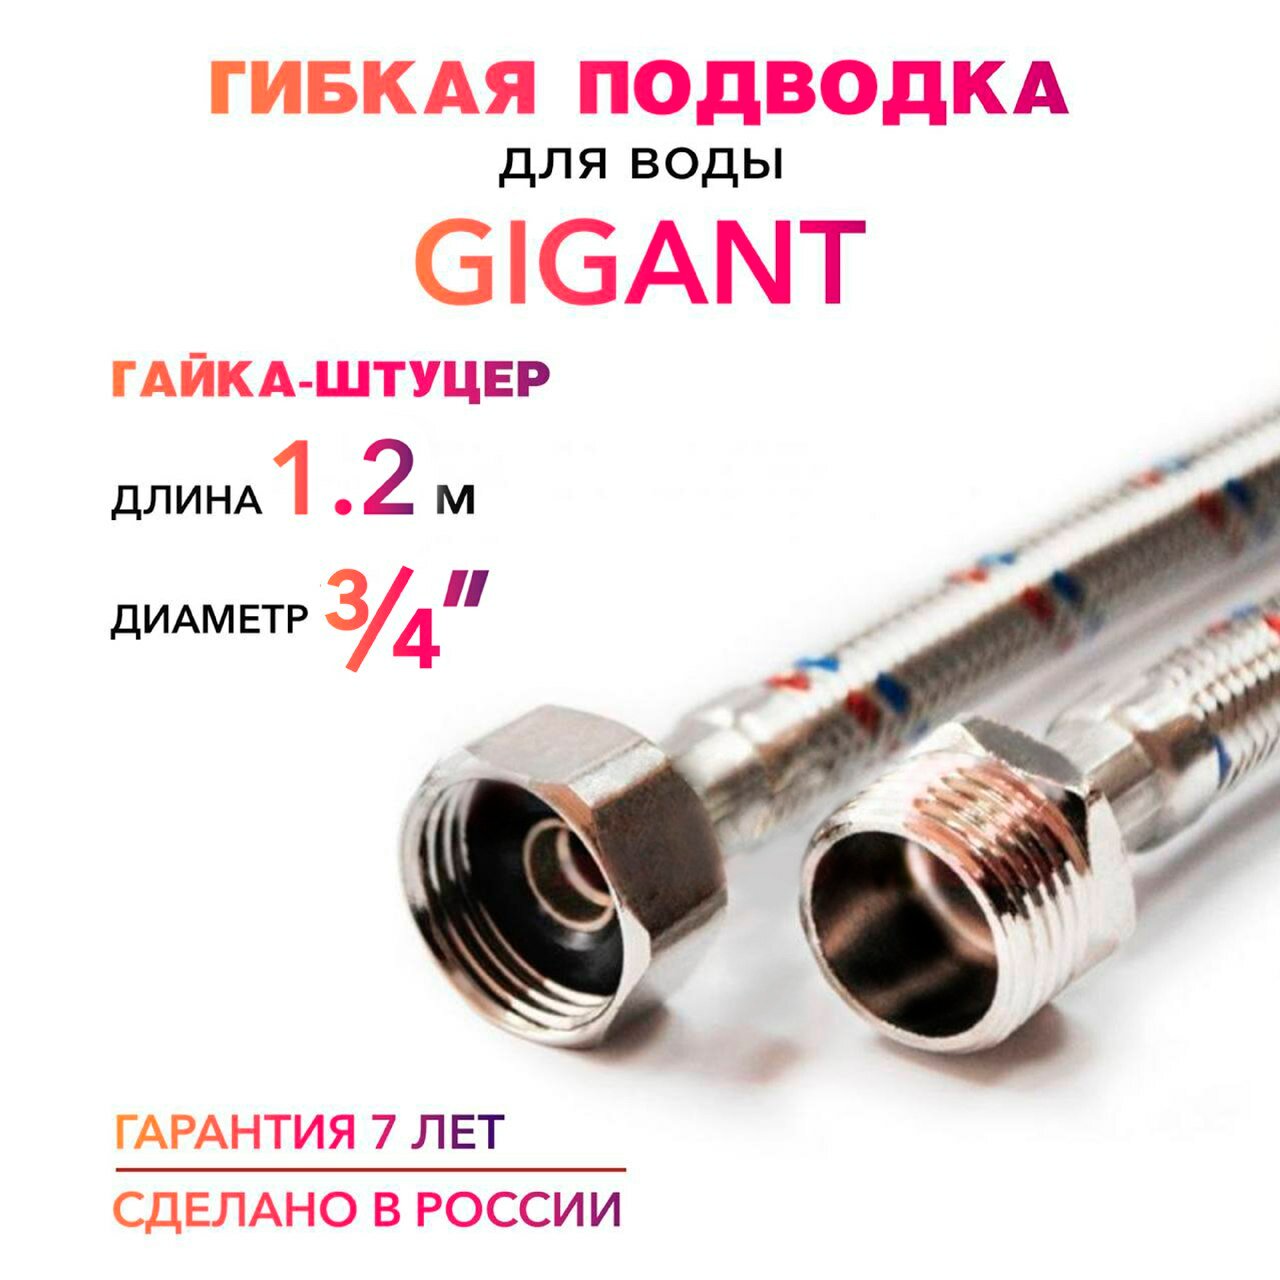 Гибкая подводка для воды ГИГАНТ 3/4" гайка-уцер MK Plast